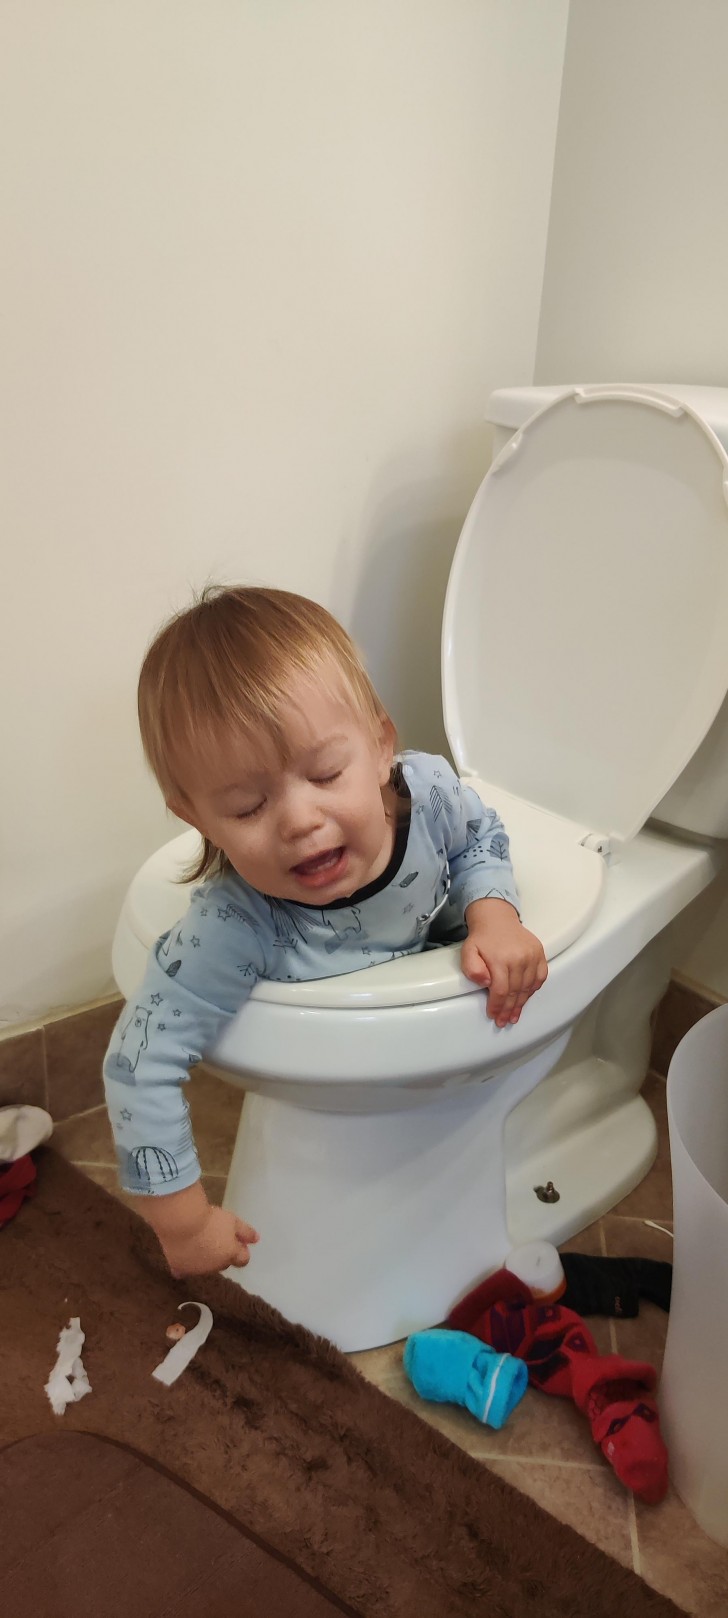 Mio figlio si è appena accorto di aver fatto la cosa sbagliata...in bagno!